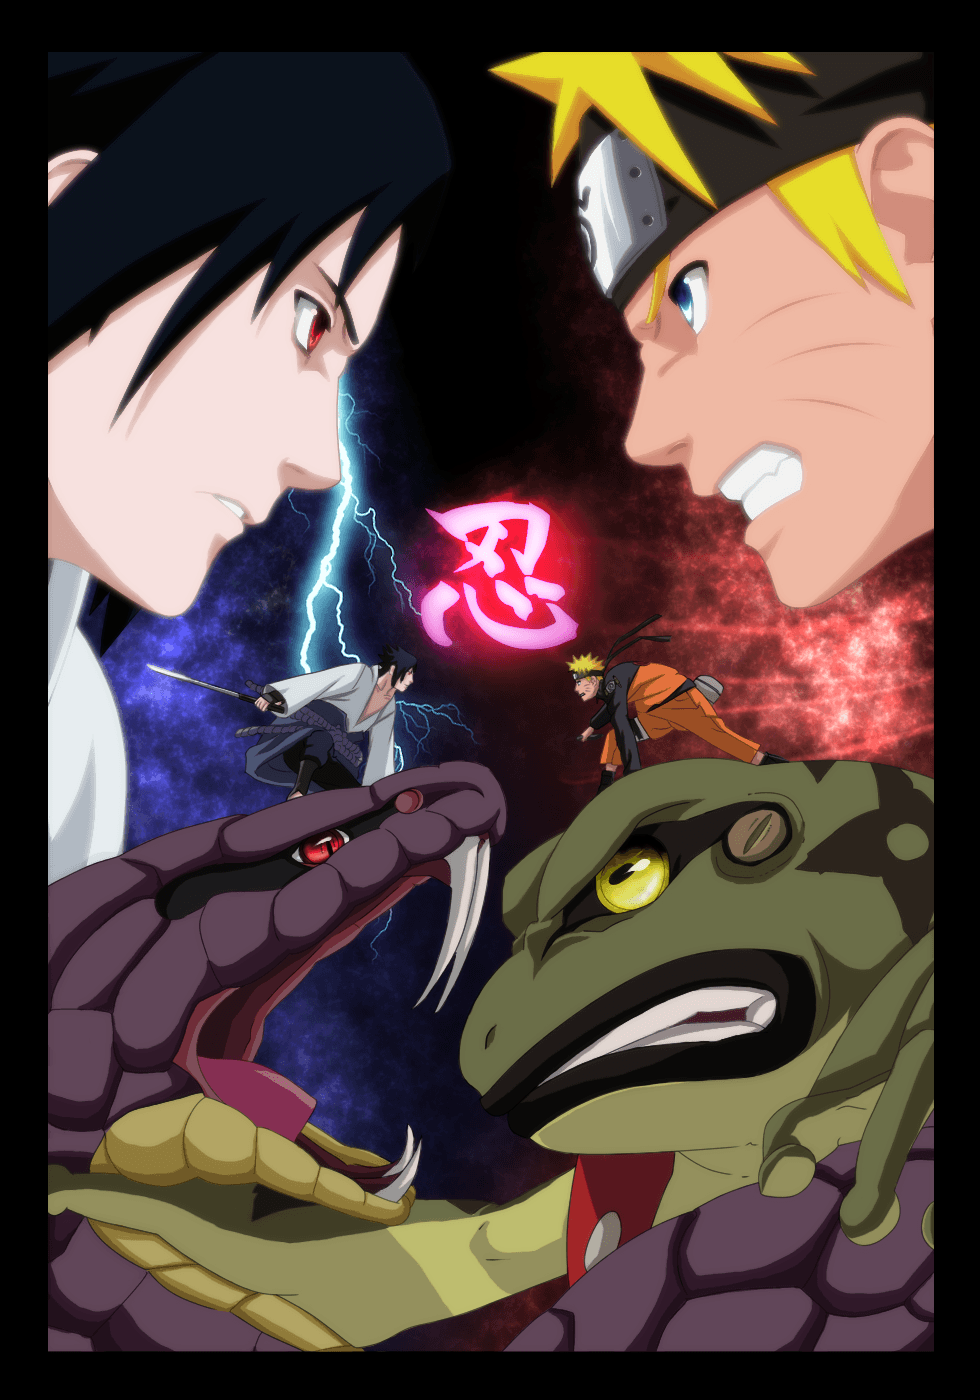 Imagenes De Naruto Y Sasuke